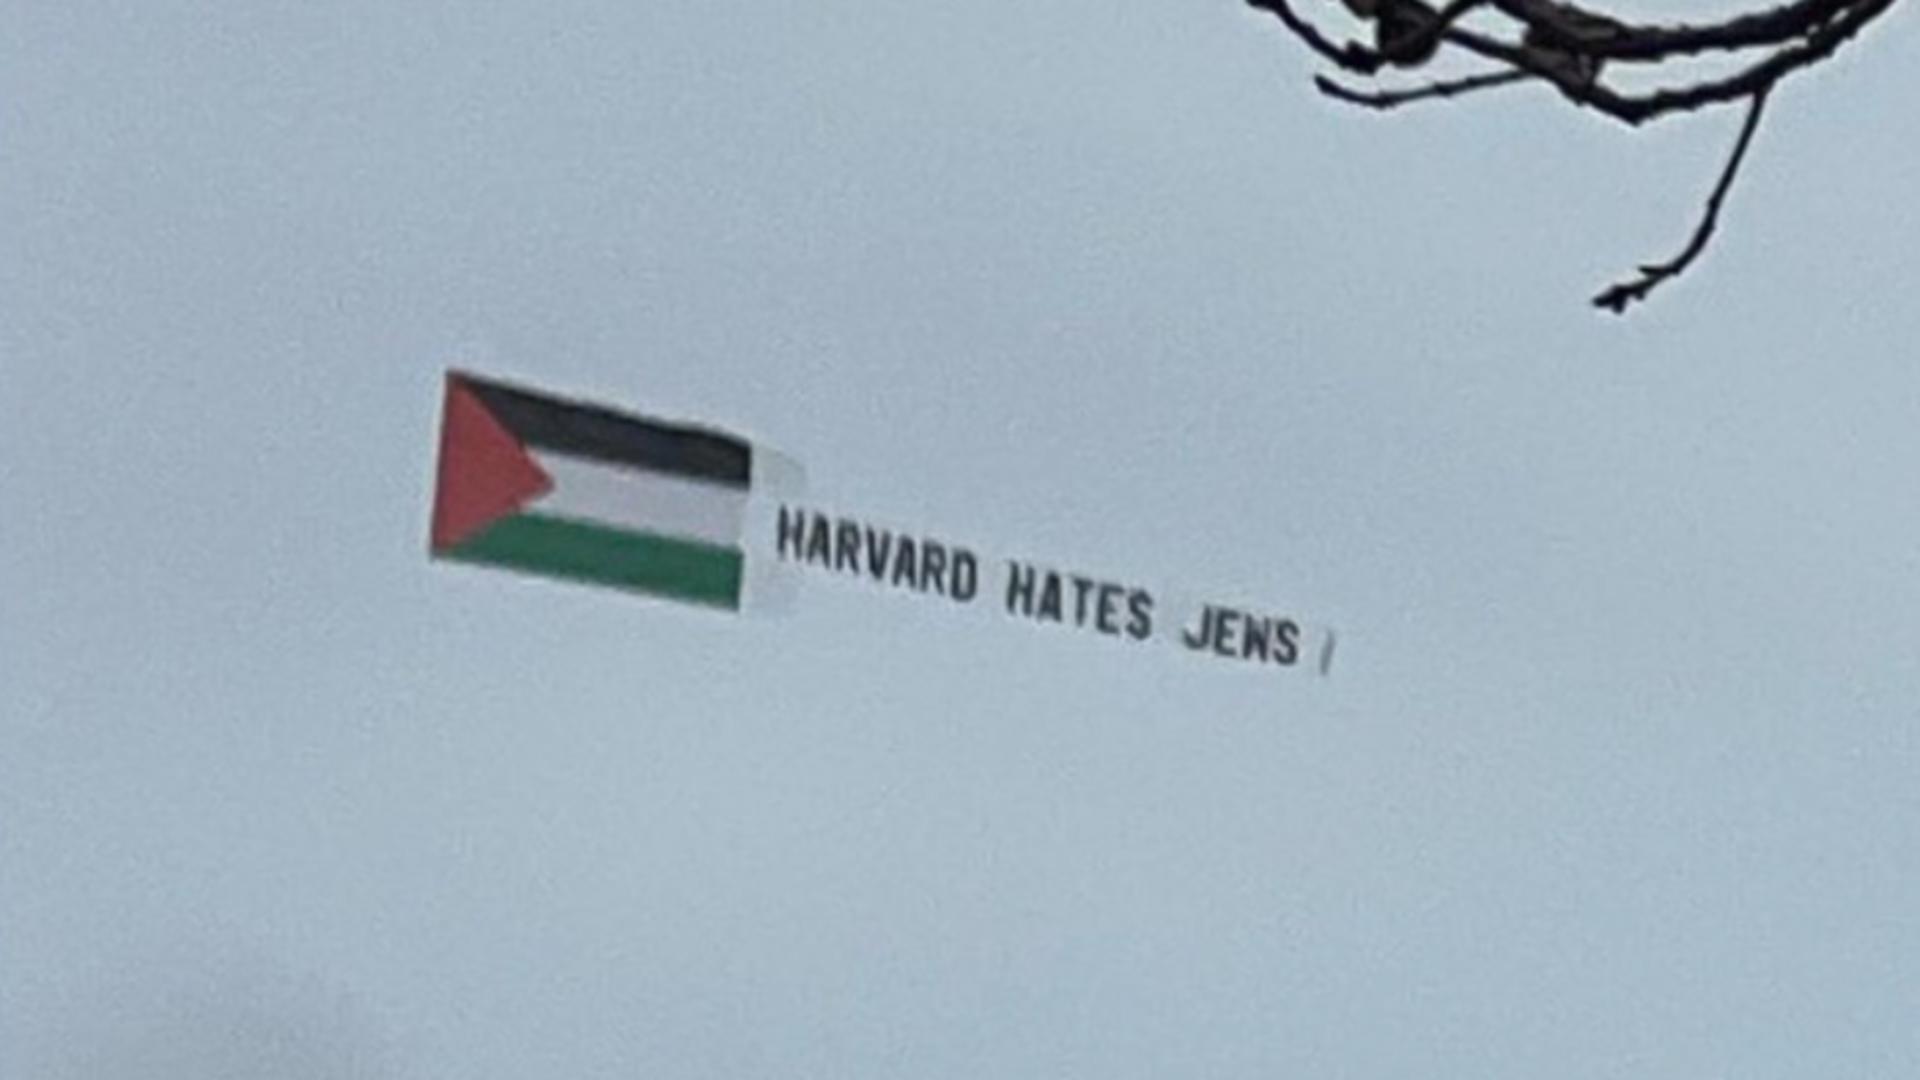 “Harvard urăște evreii” – Mesajul controversat, fluturat deasupra uneia dintre cele mai mari universități din lume – VIDEO